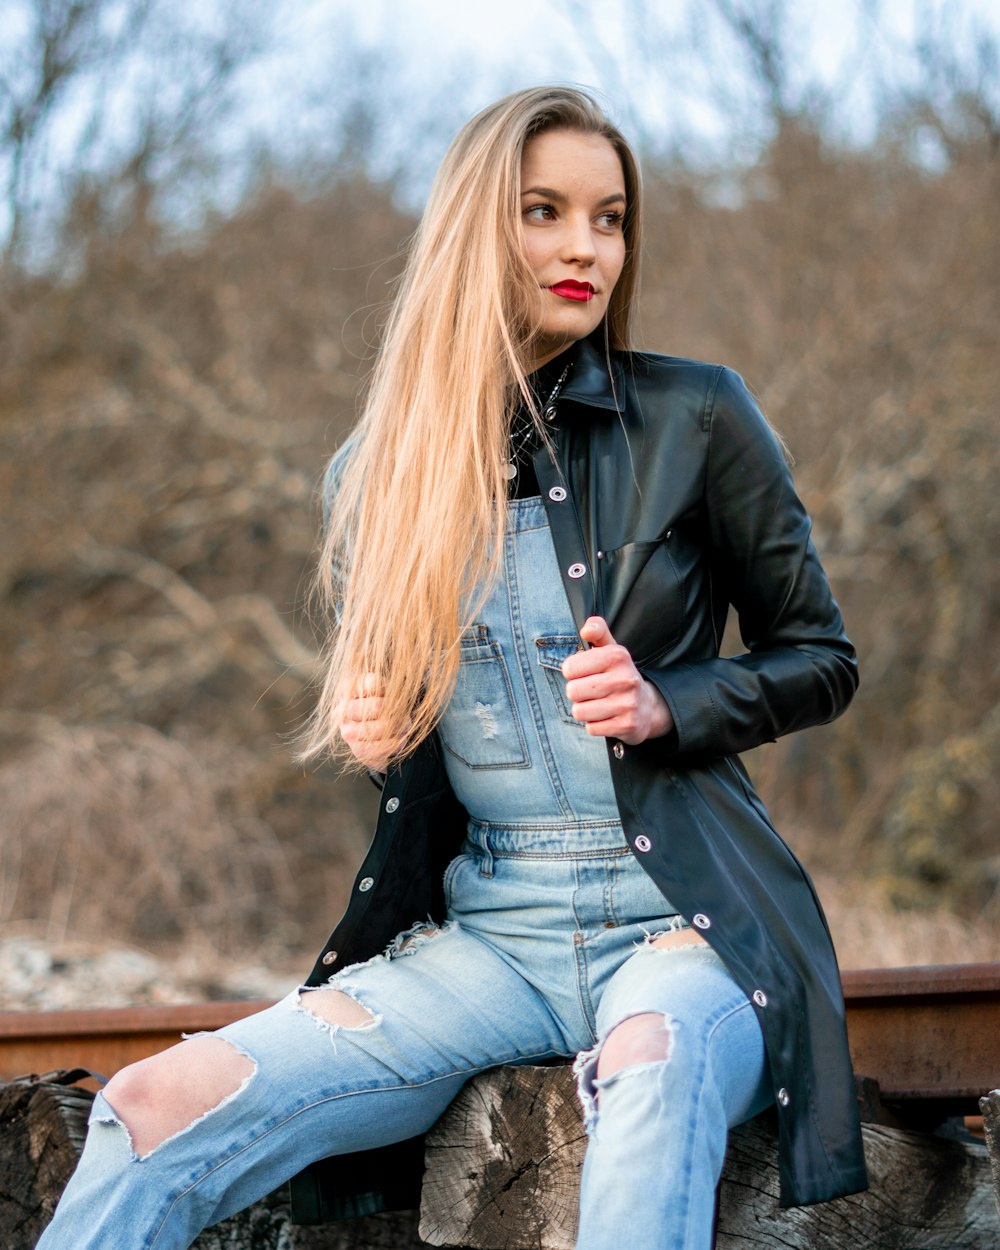 Frau in schwarzer Lederjacke und blauer Jeans sitzt tagsüber auf brauner Holzbank